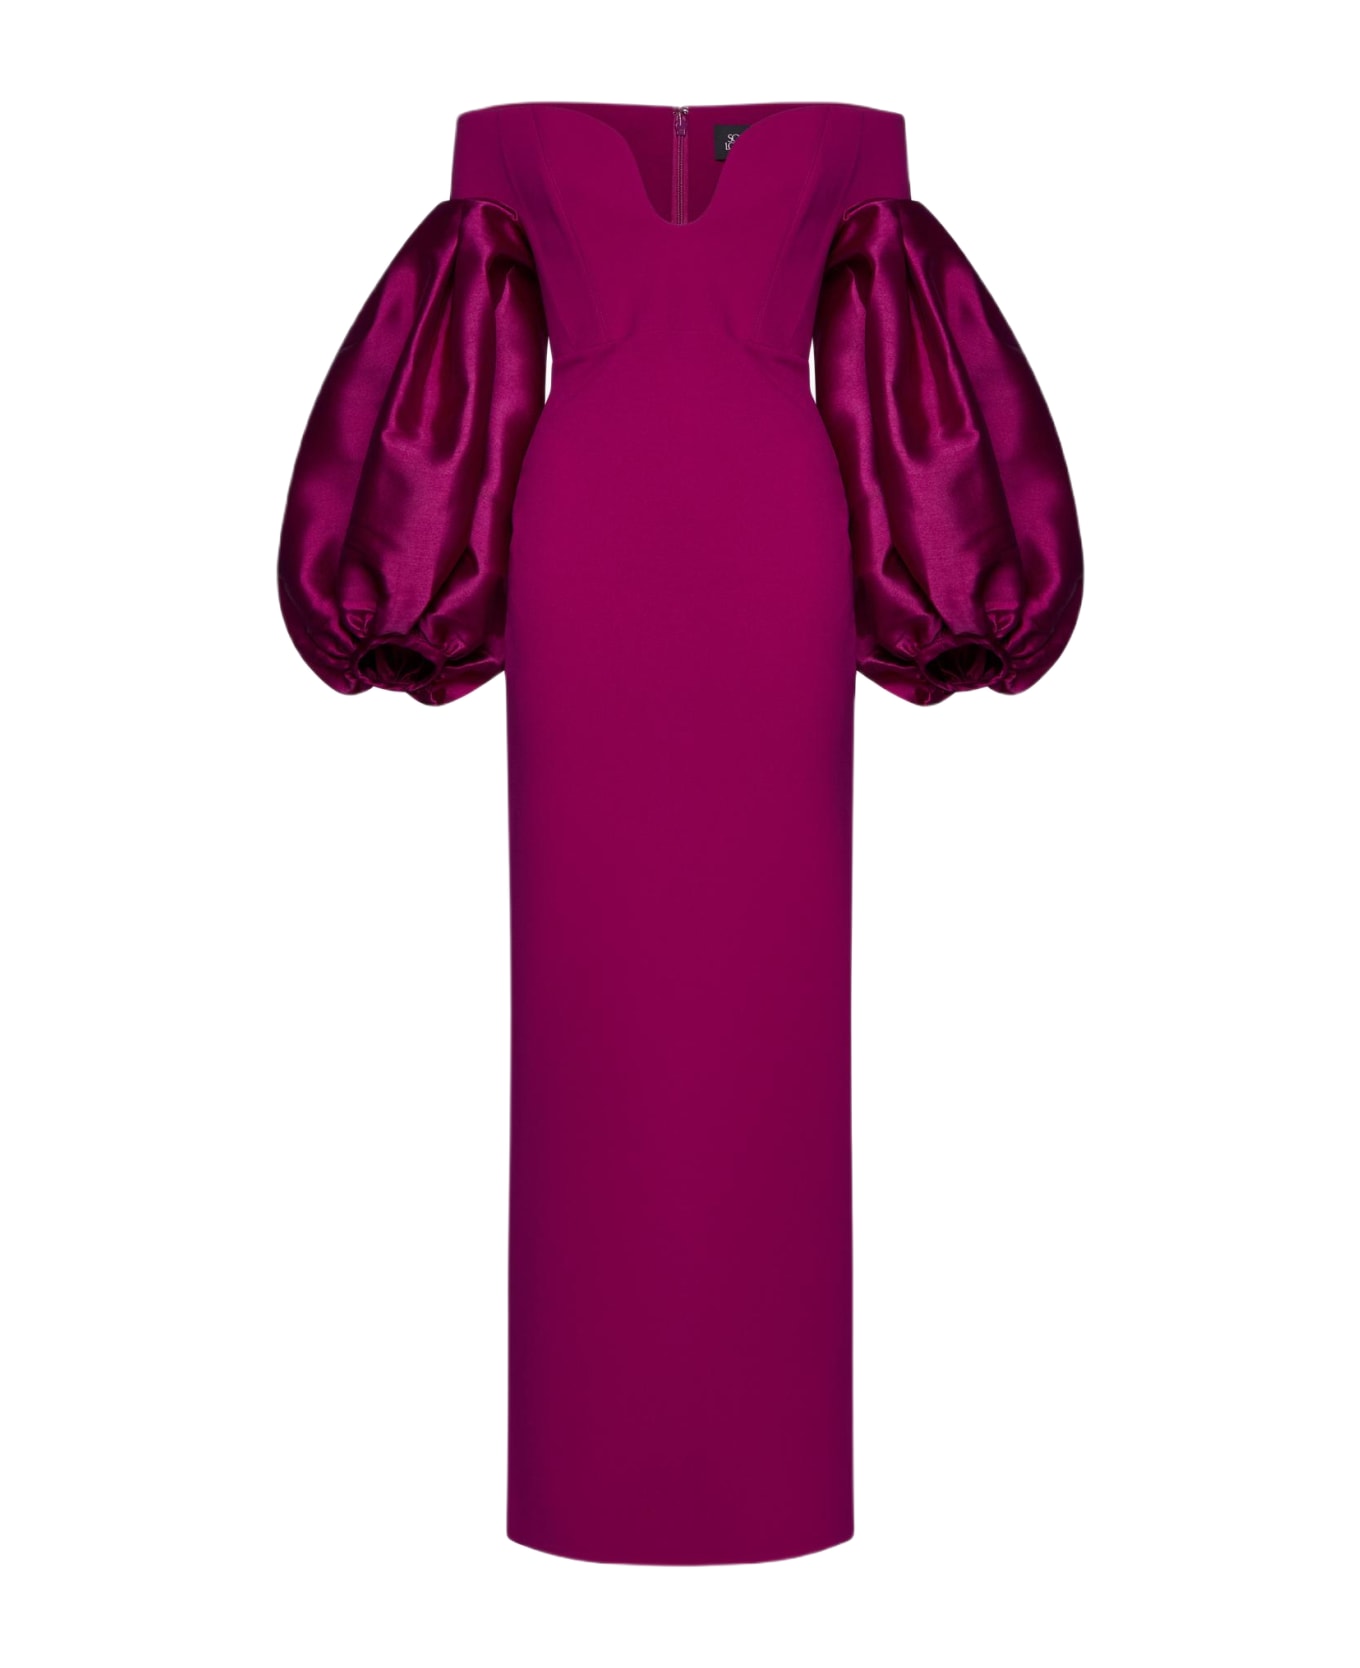 Solace London Mora Maxi Dress - Fuchsia